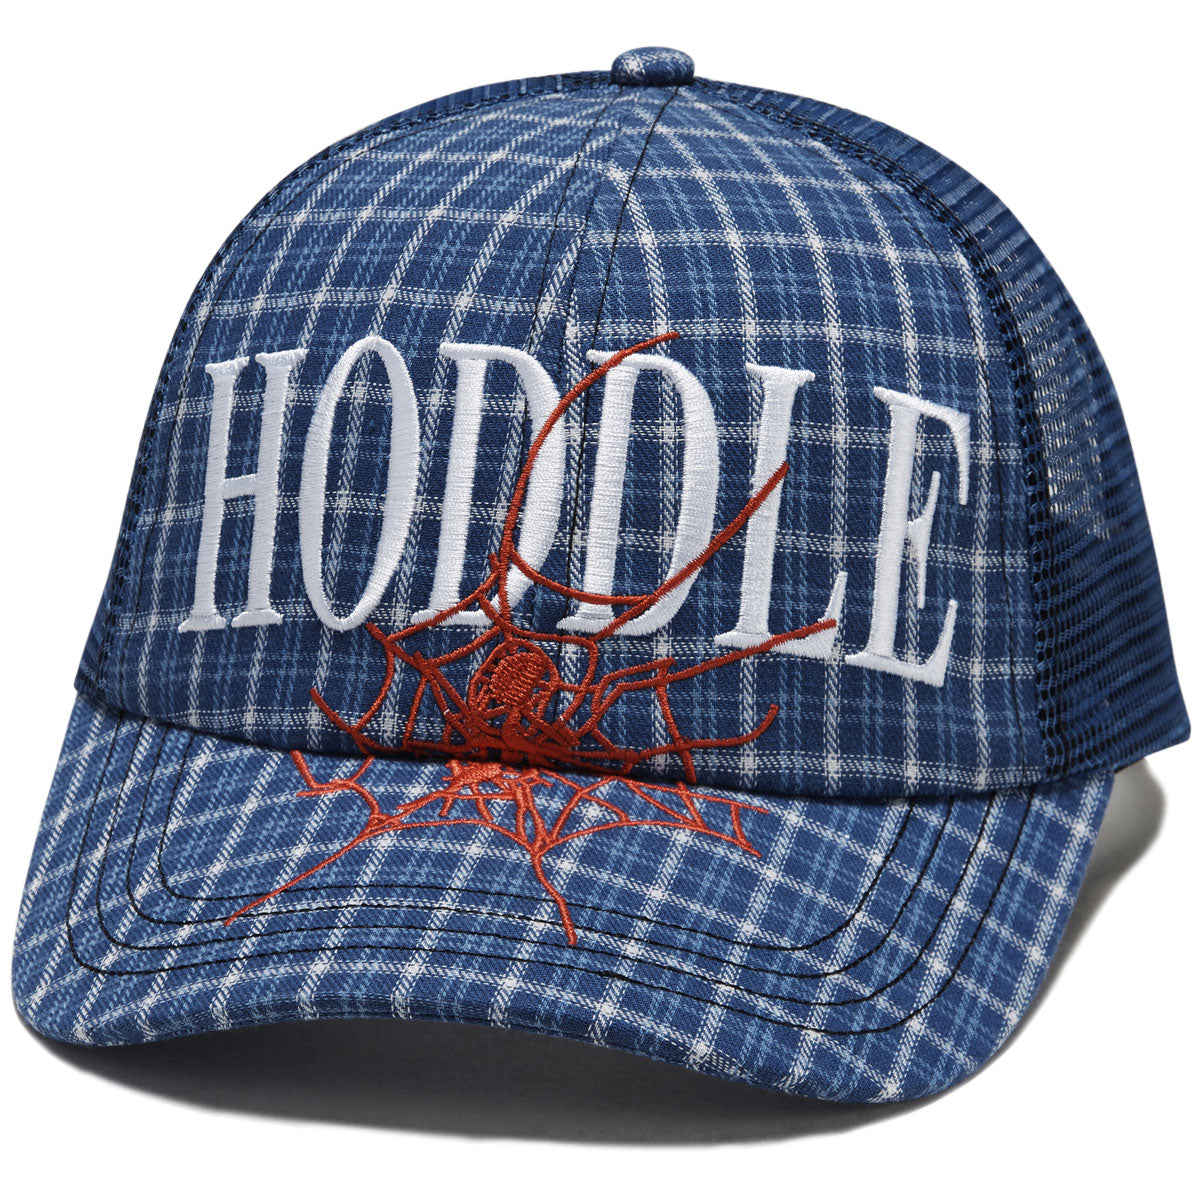 Hoddle Web Trucker Hat - Blue image 1